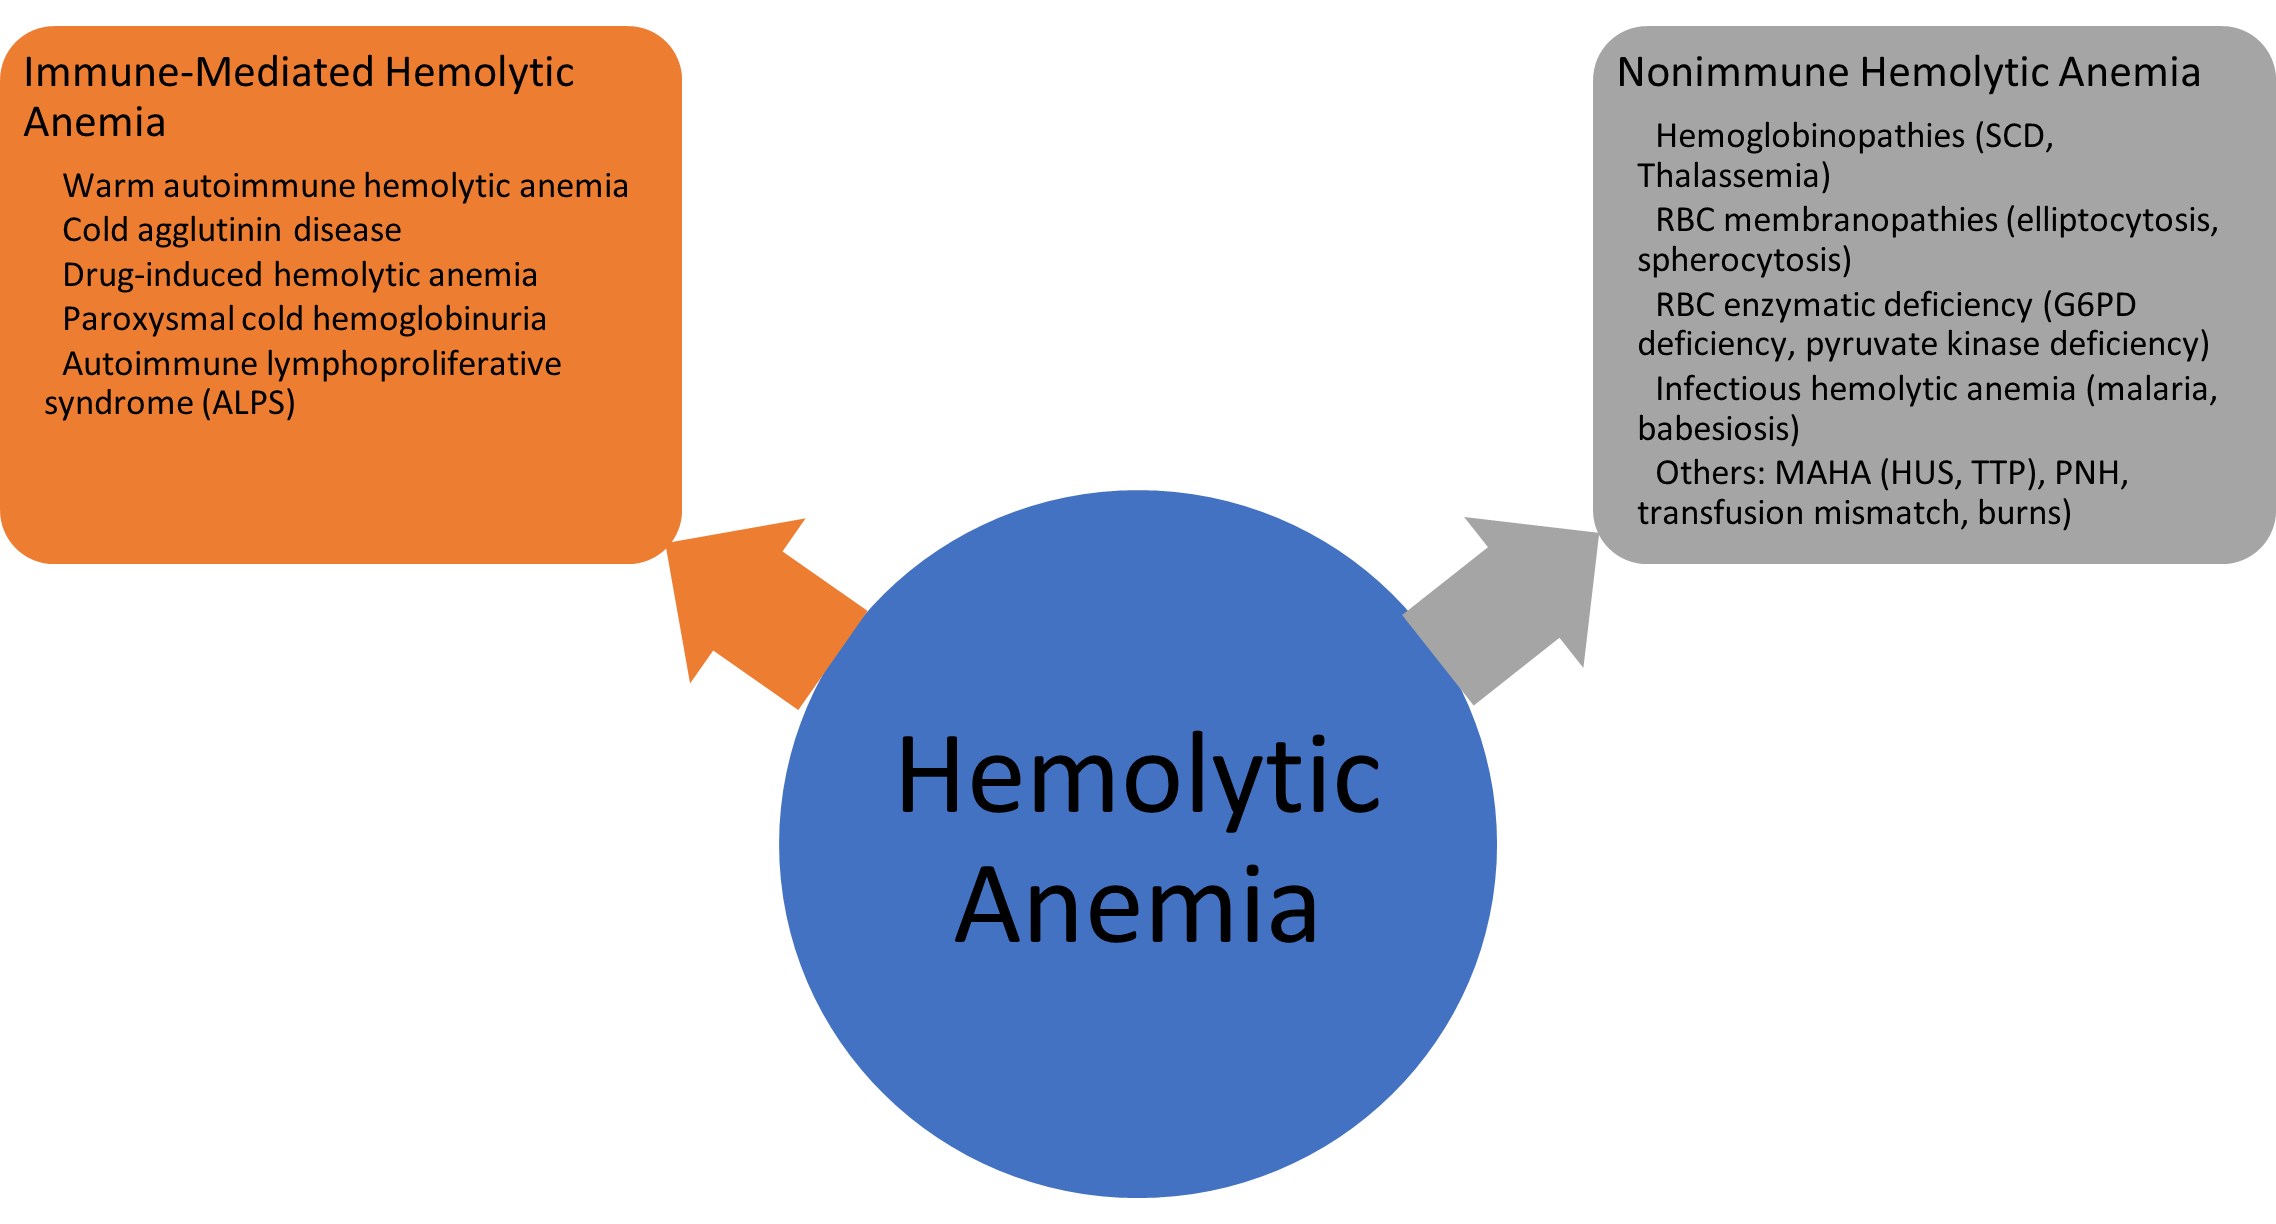 Most common etiologies of hemolytic anemia